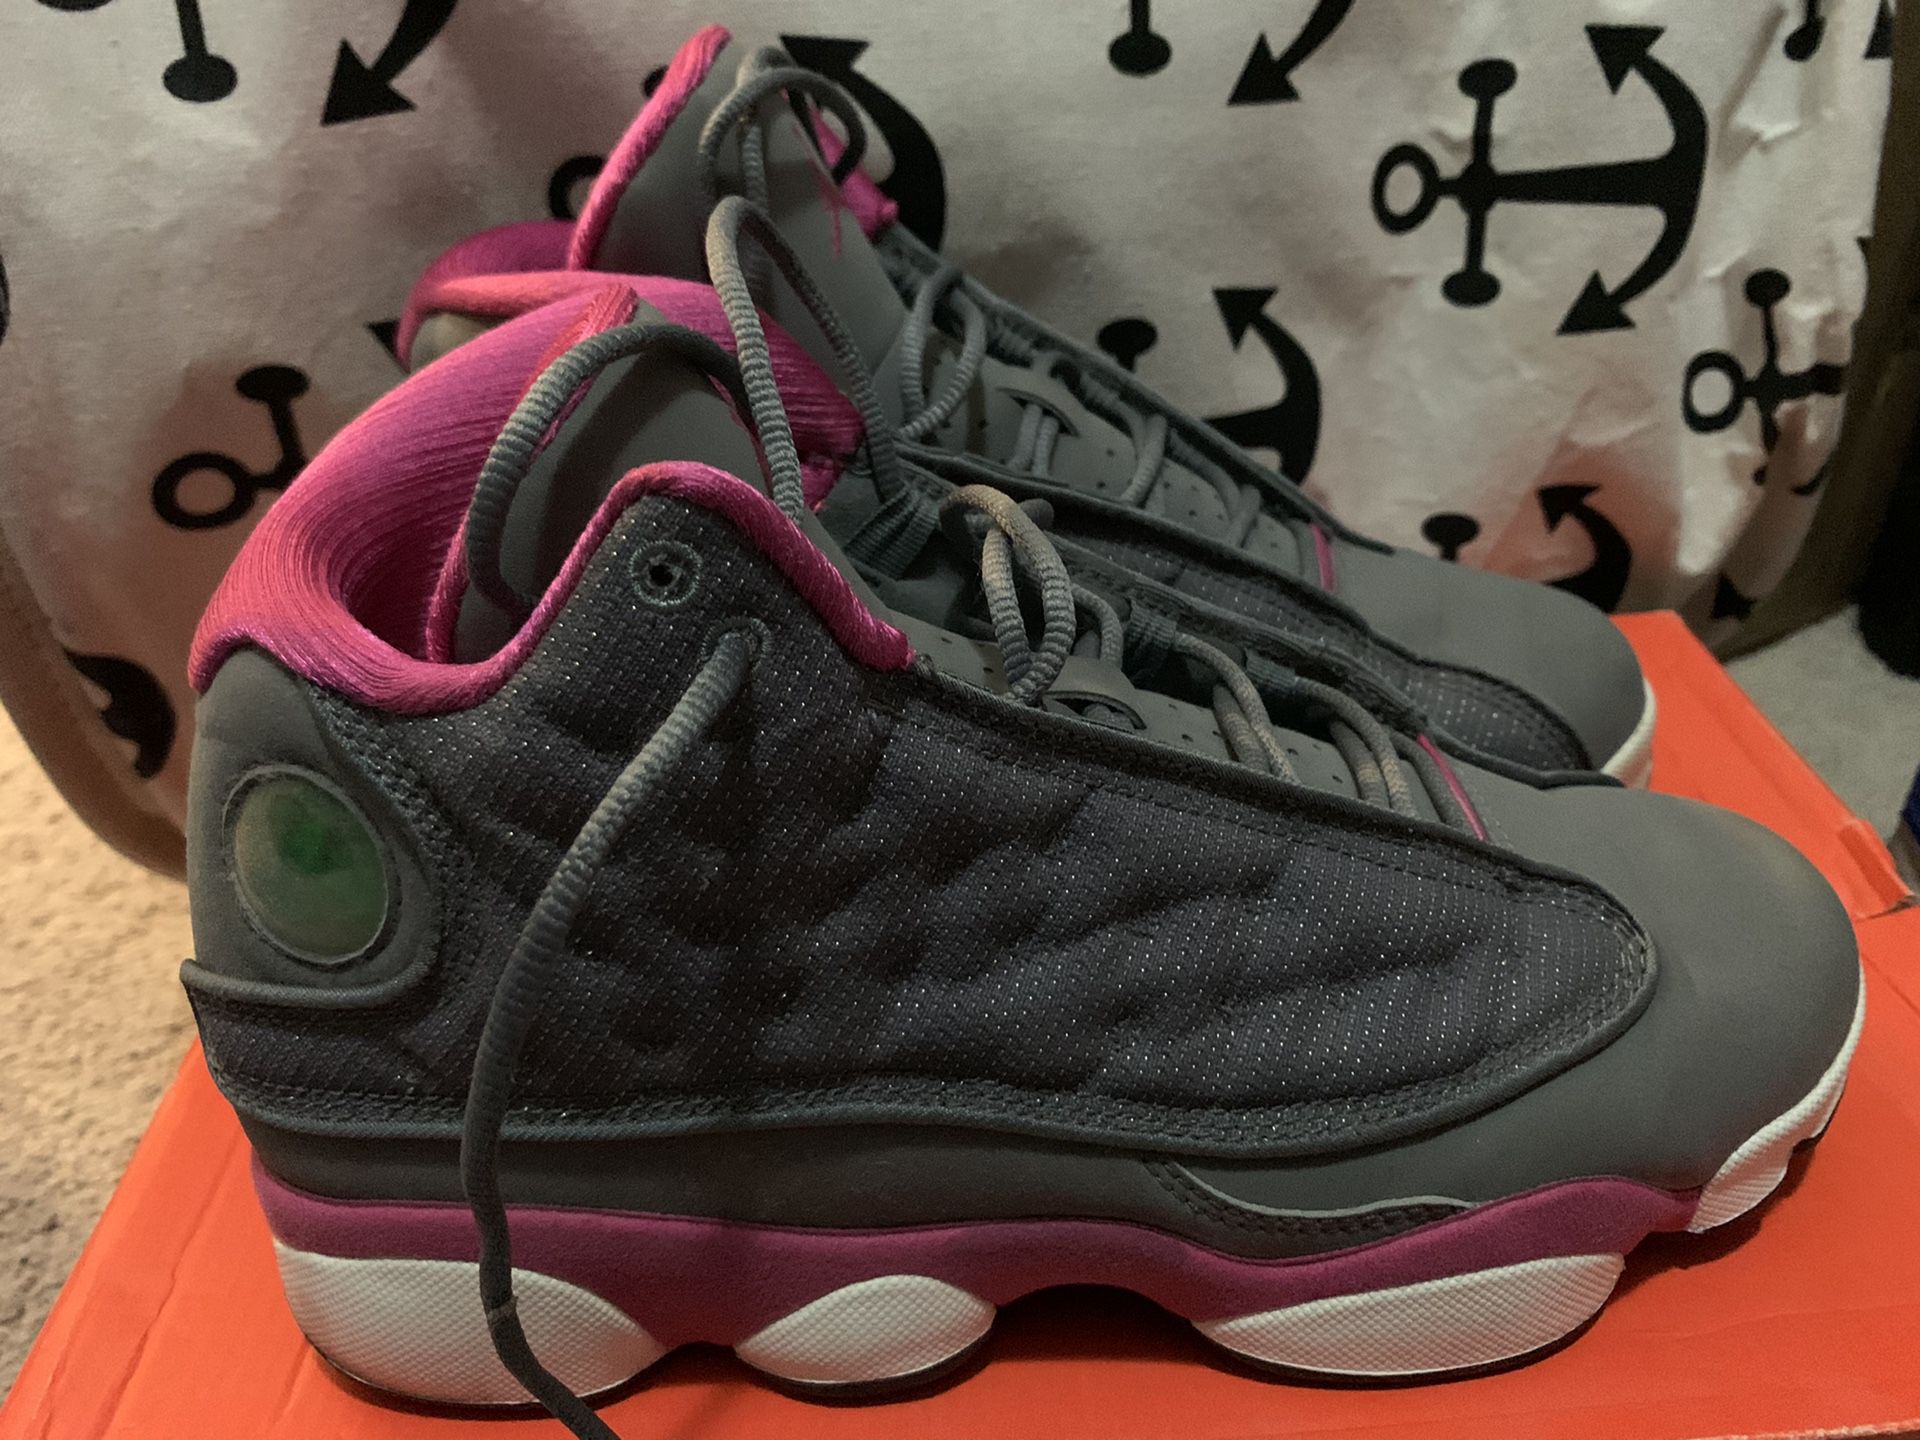 Pink Jordan 13’s size 6.5Y